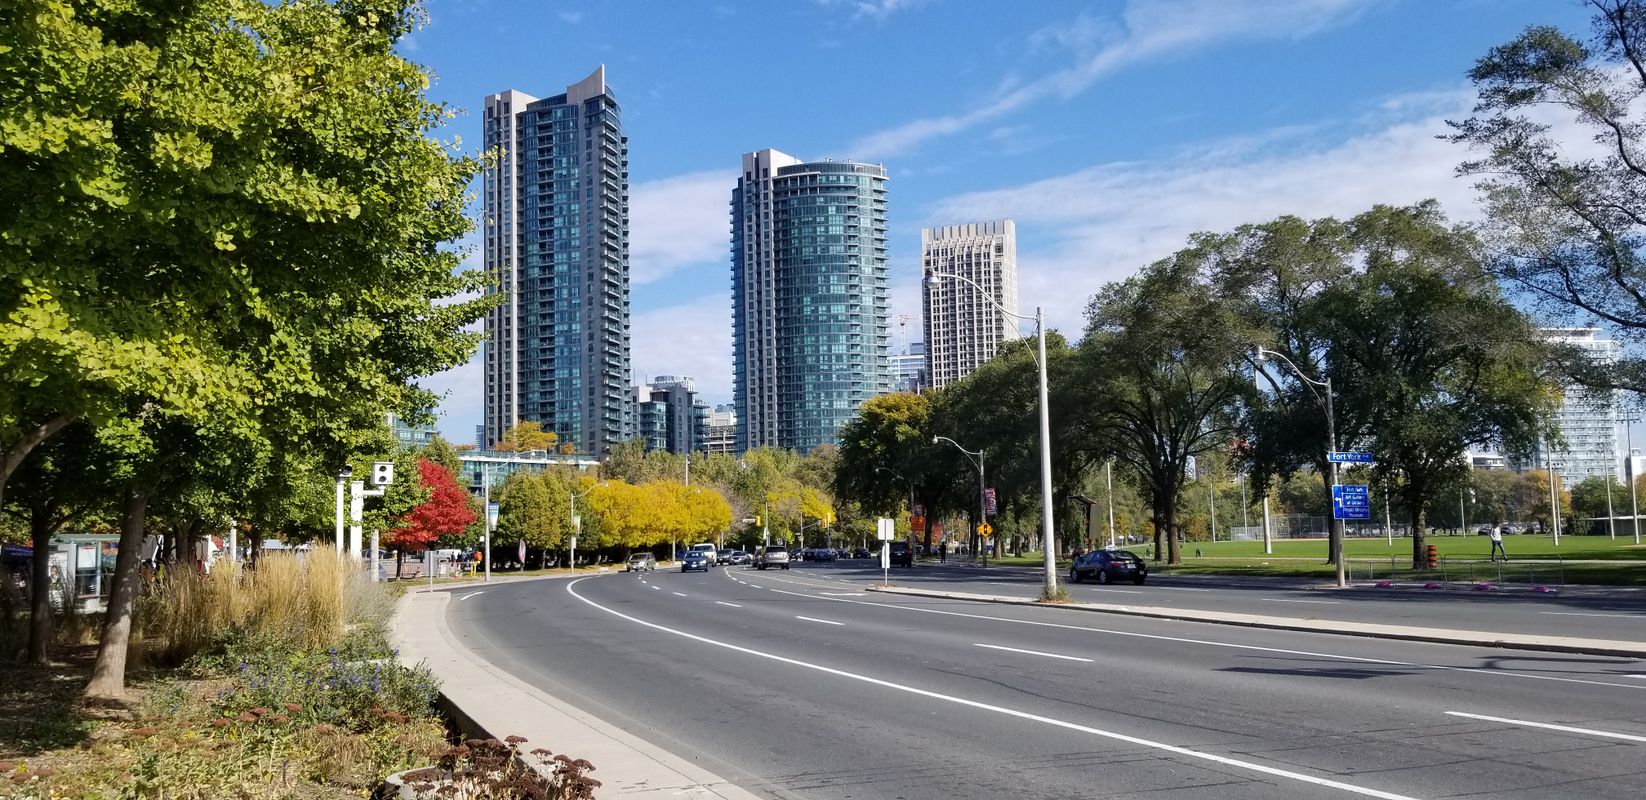 Toronto City View  